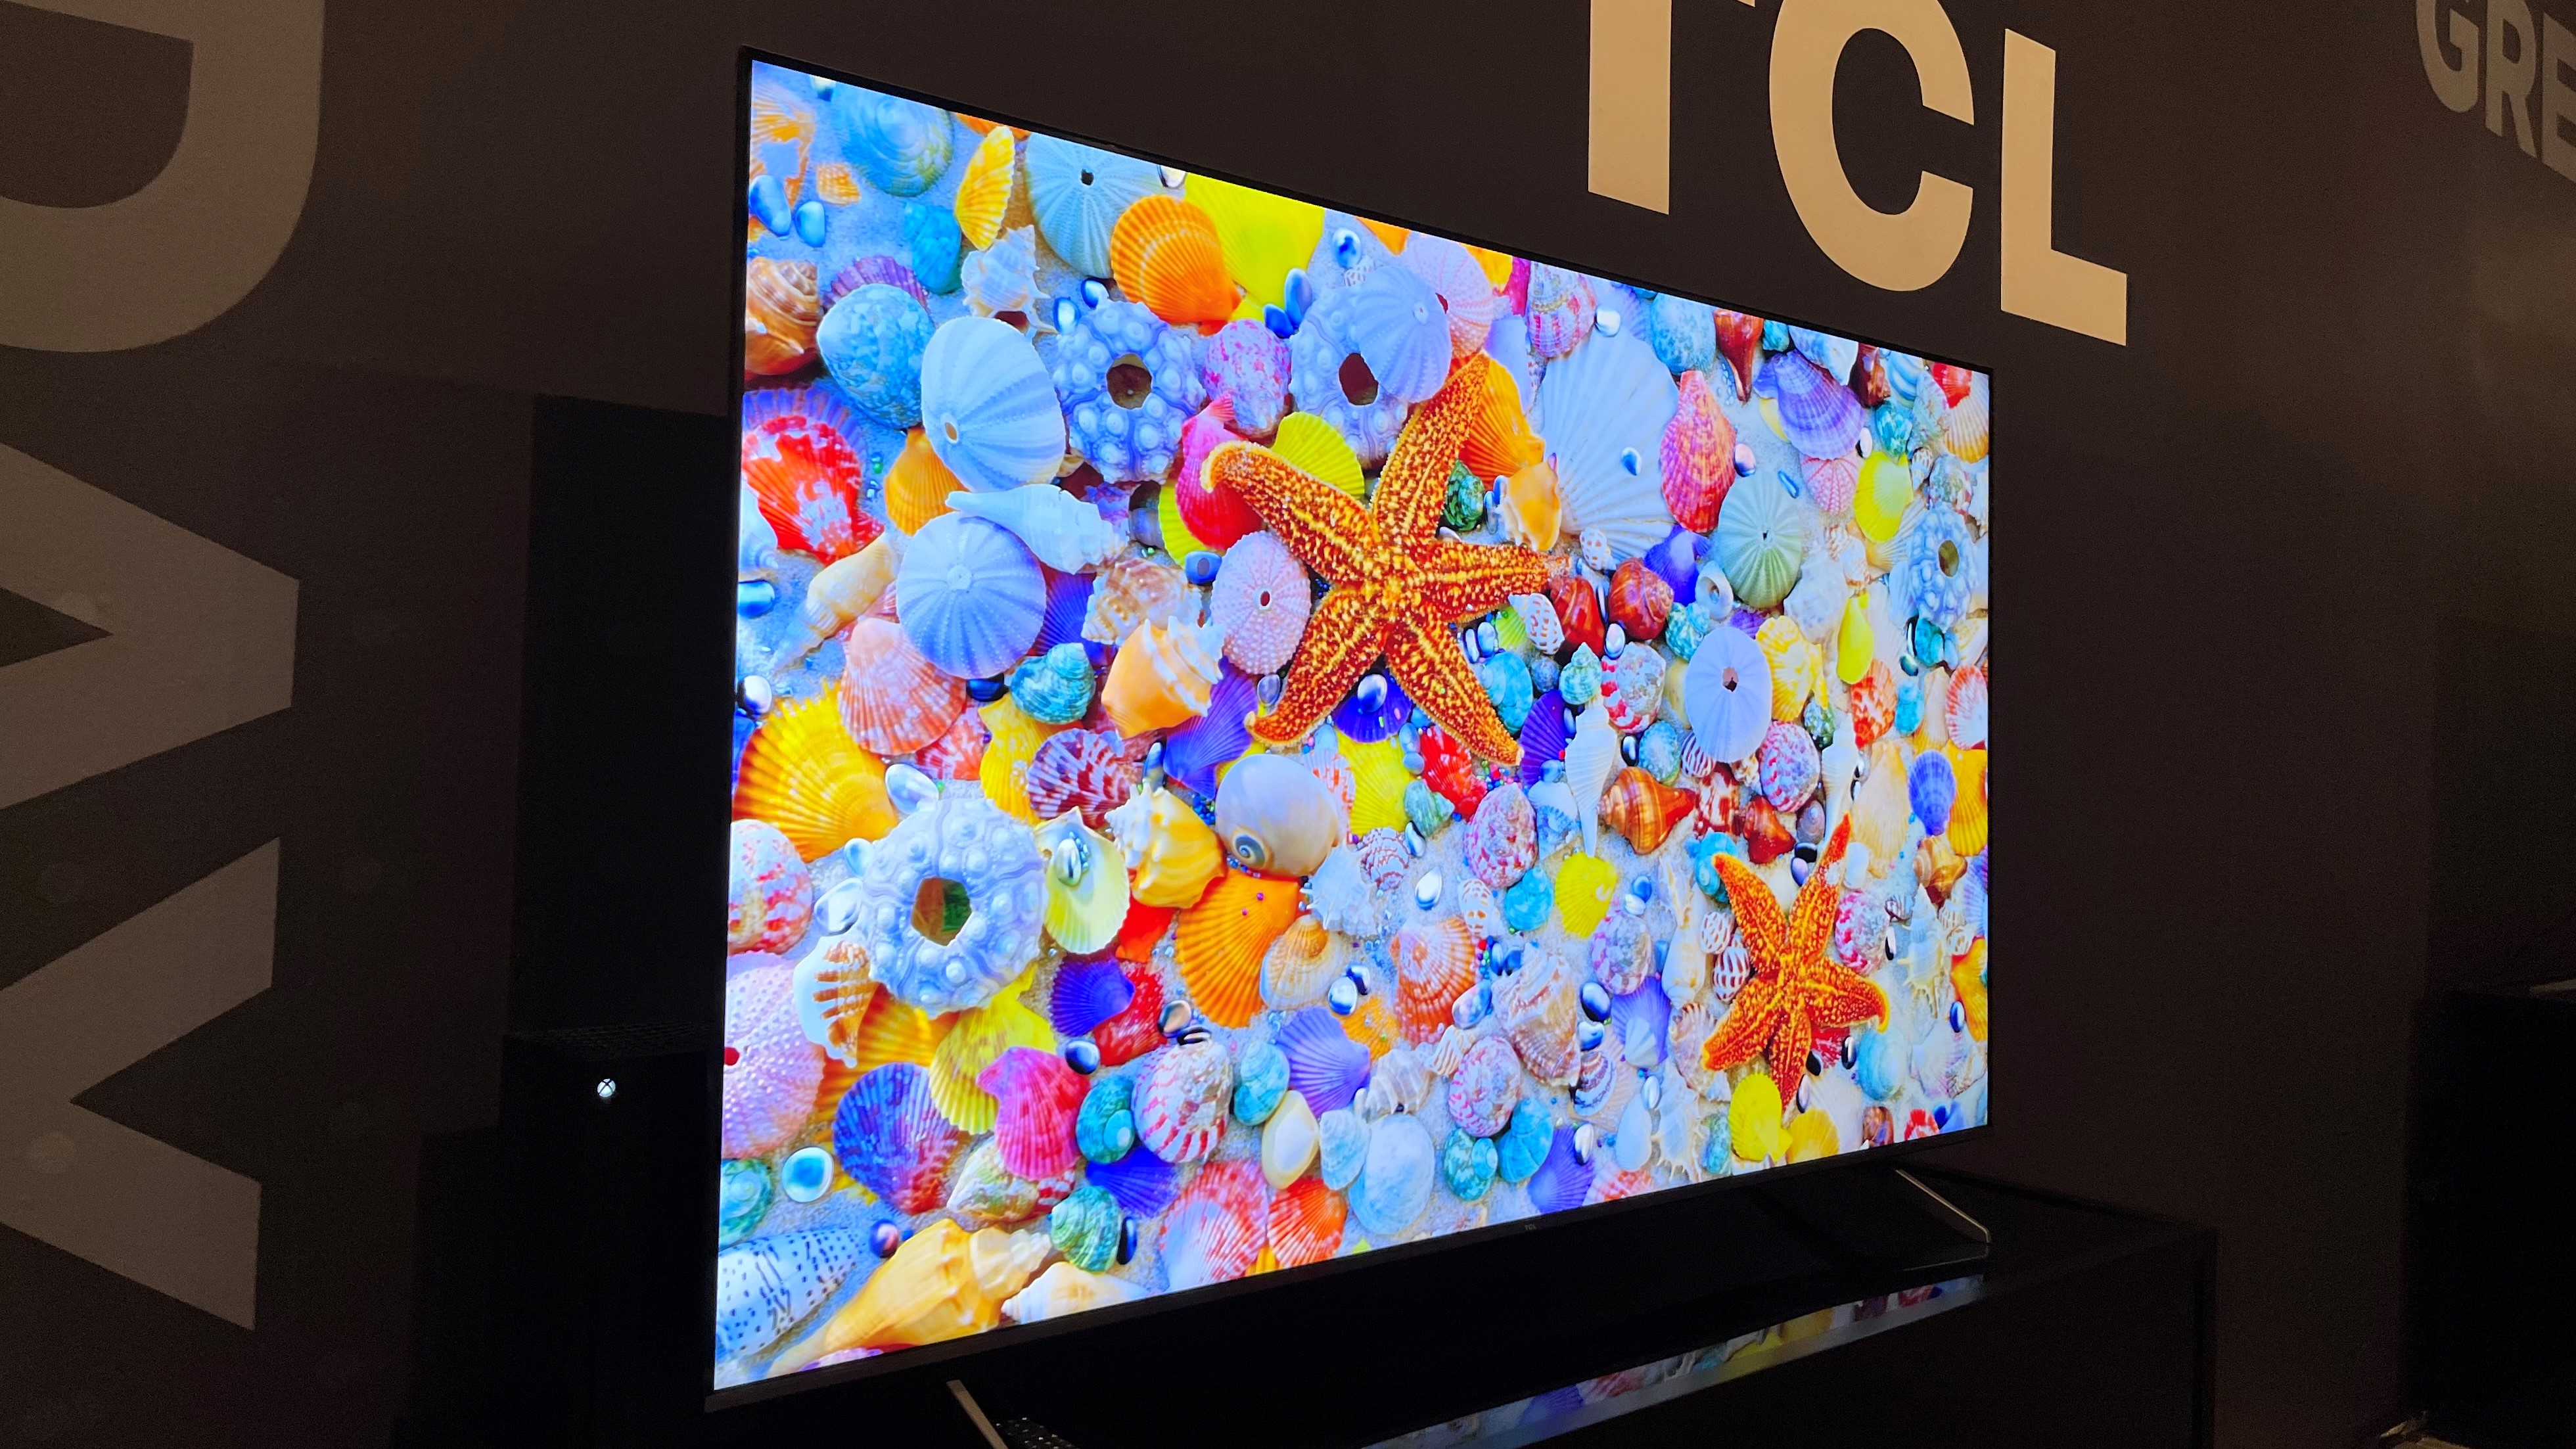 Téléviseur de la série TCL Q6 montrant une image colorée